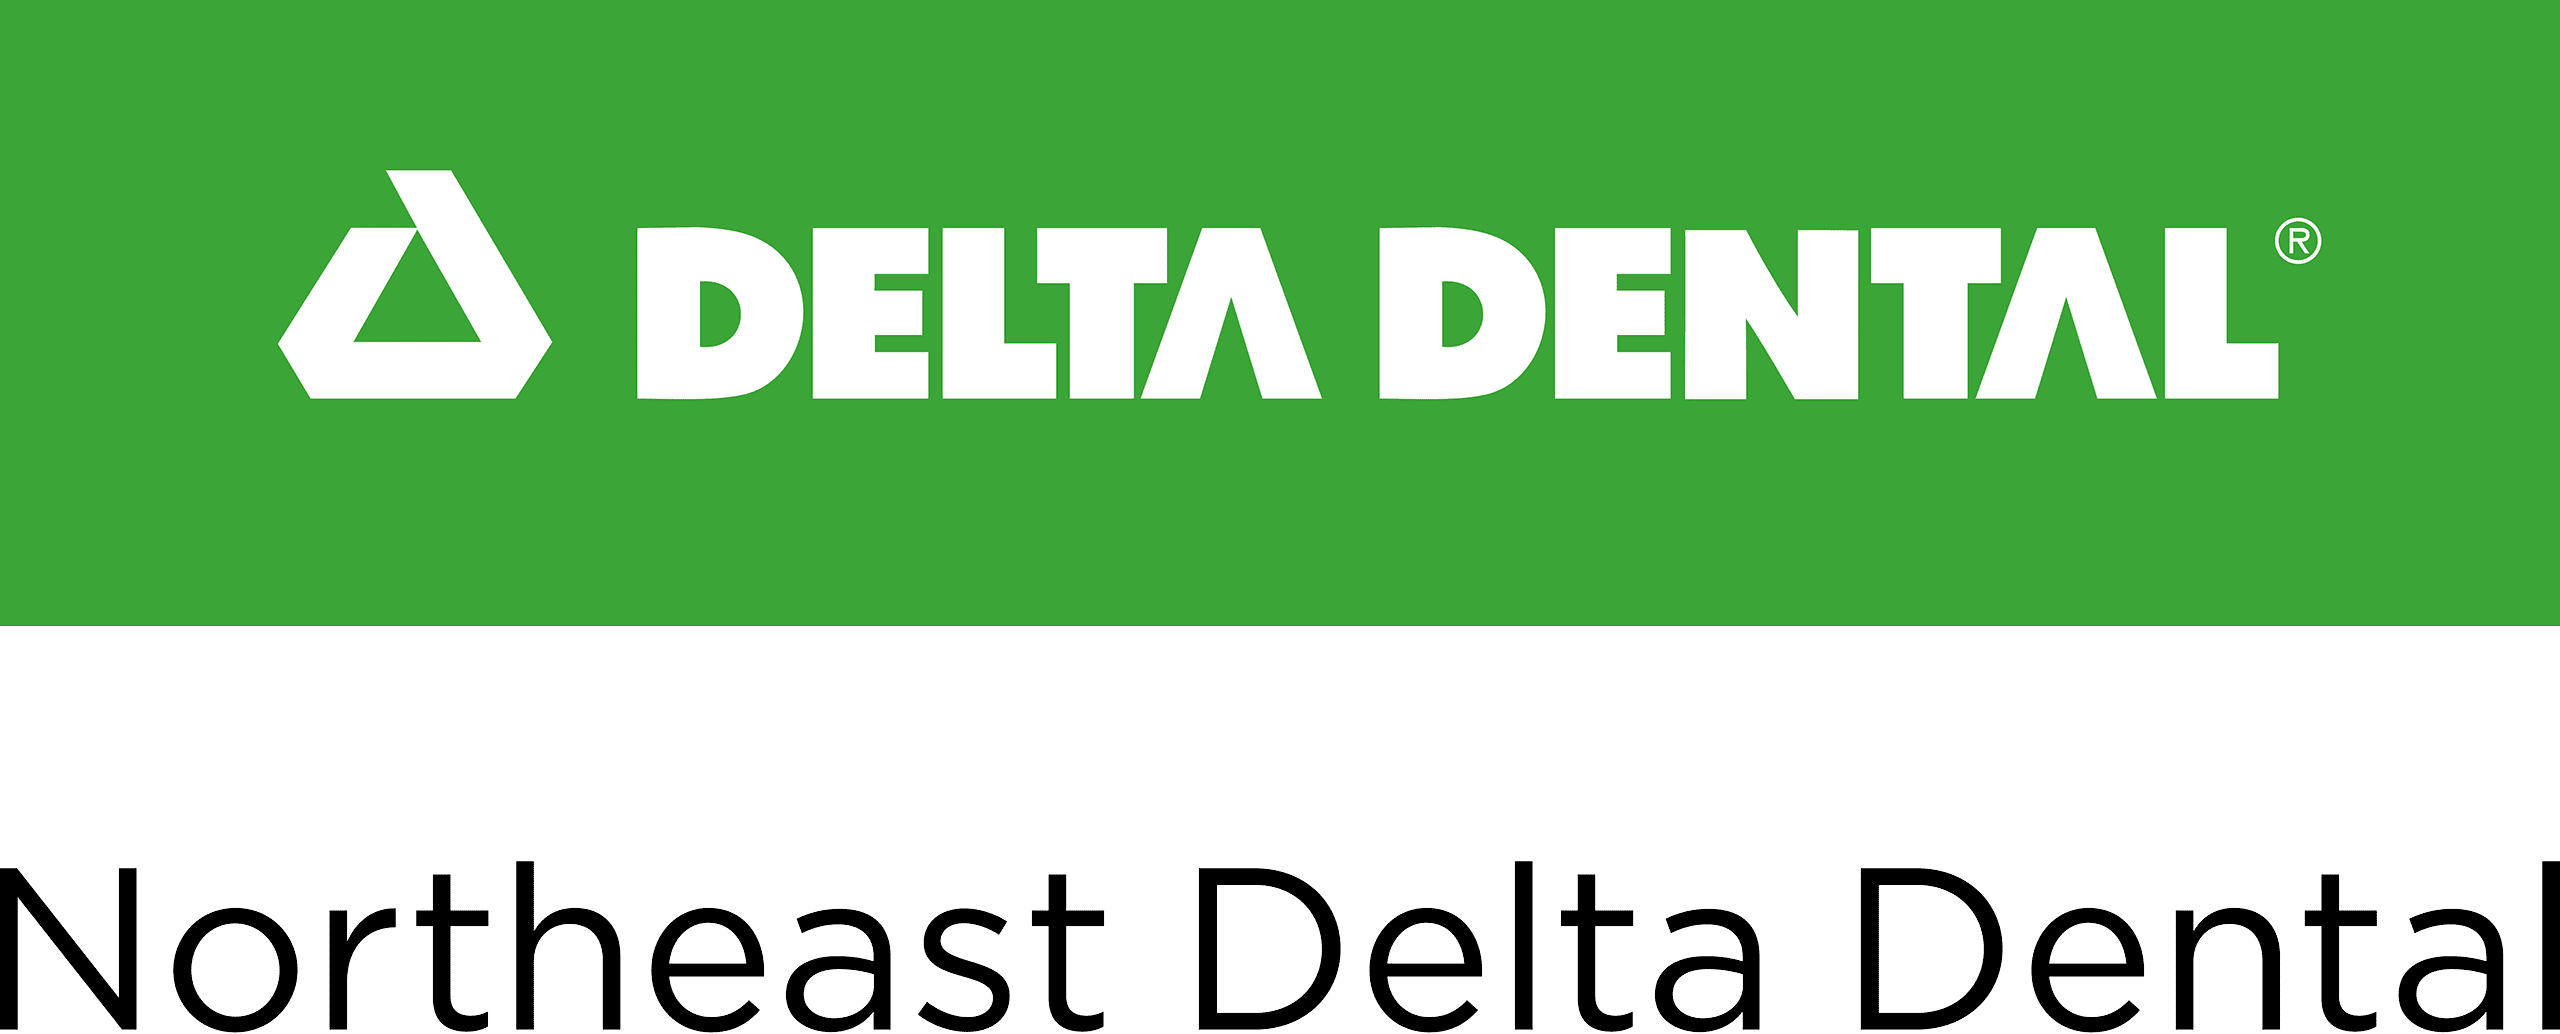 $12,500 Northeast Delta Dental Foundation Supports Dental Lifeline Network • Maine